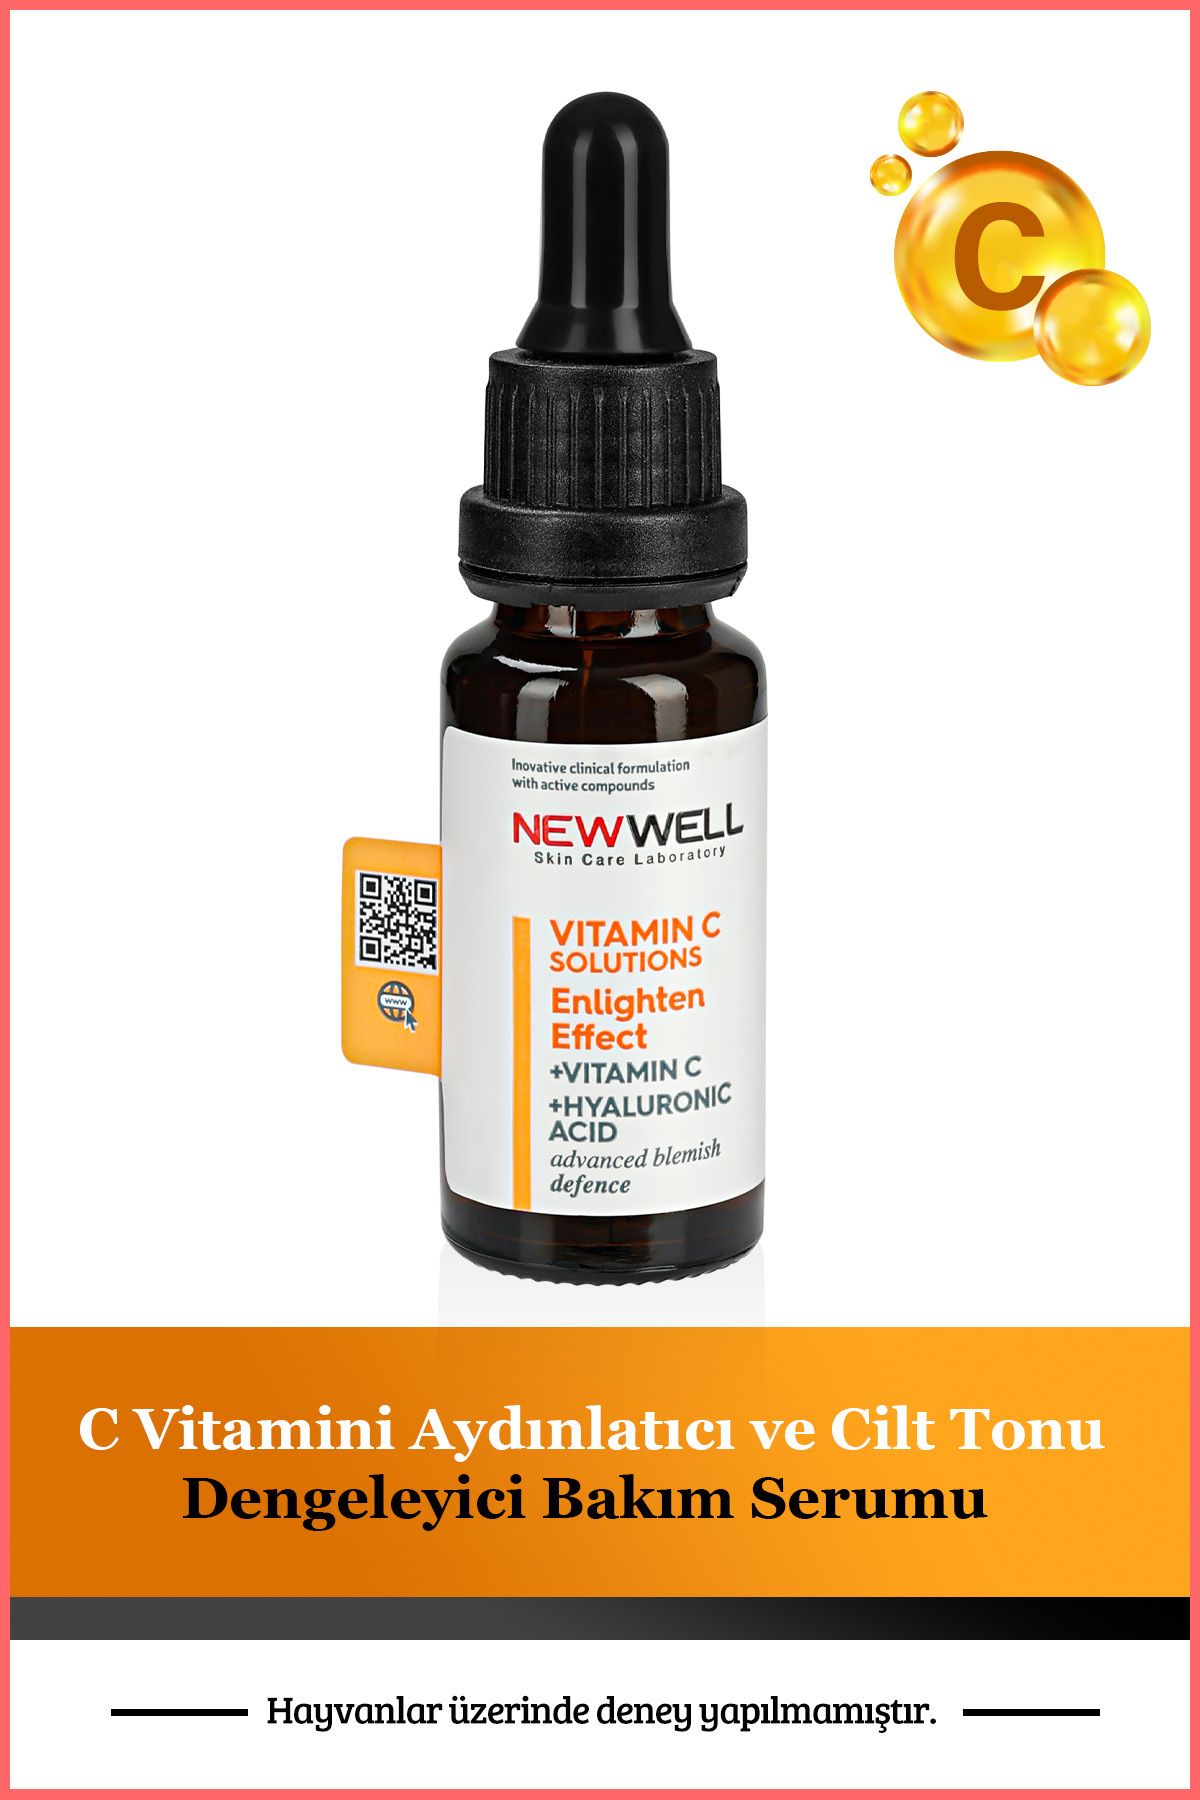 New Well C Vitamini Aydınlatıcı ve Cilt Tonu Dengeleyici Bakım Serumu 20 ML